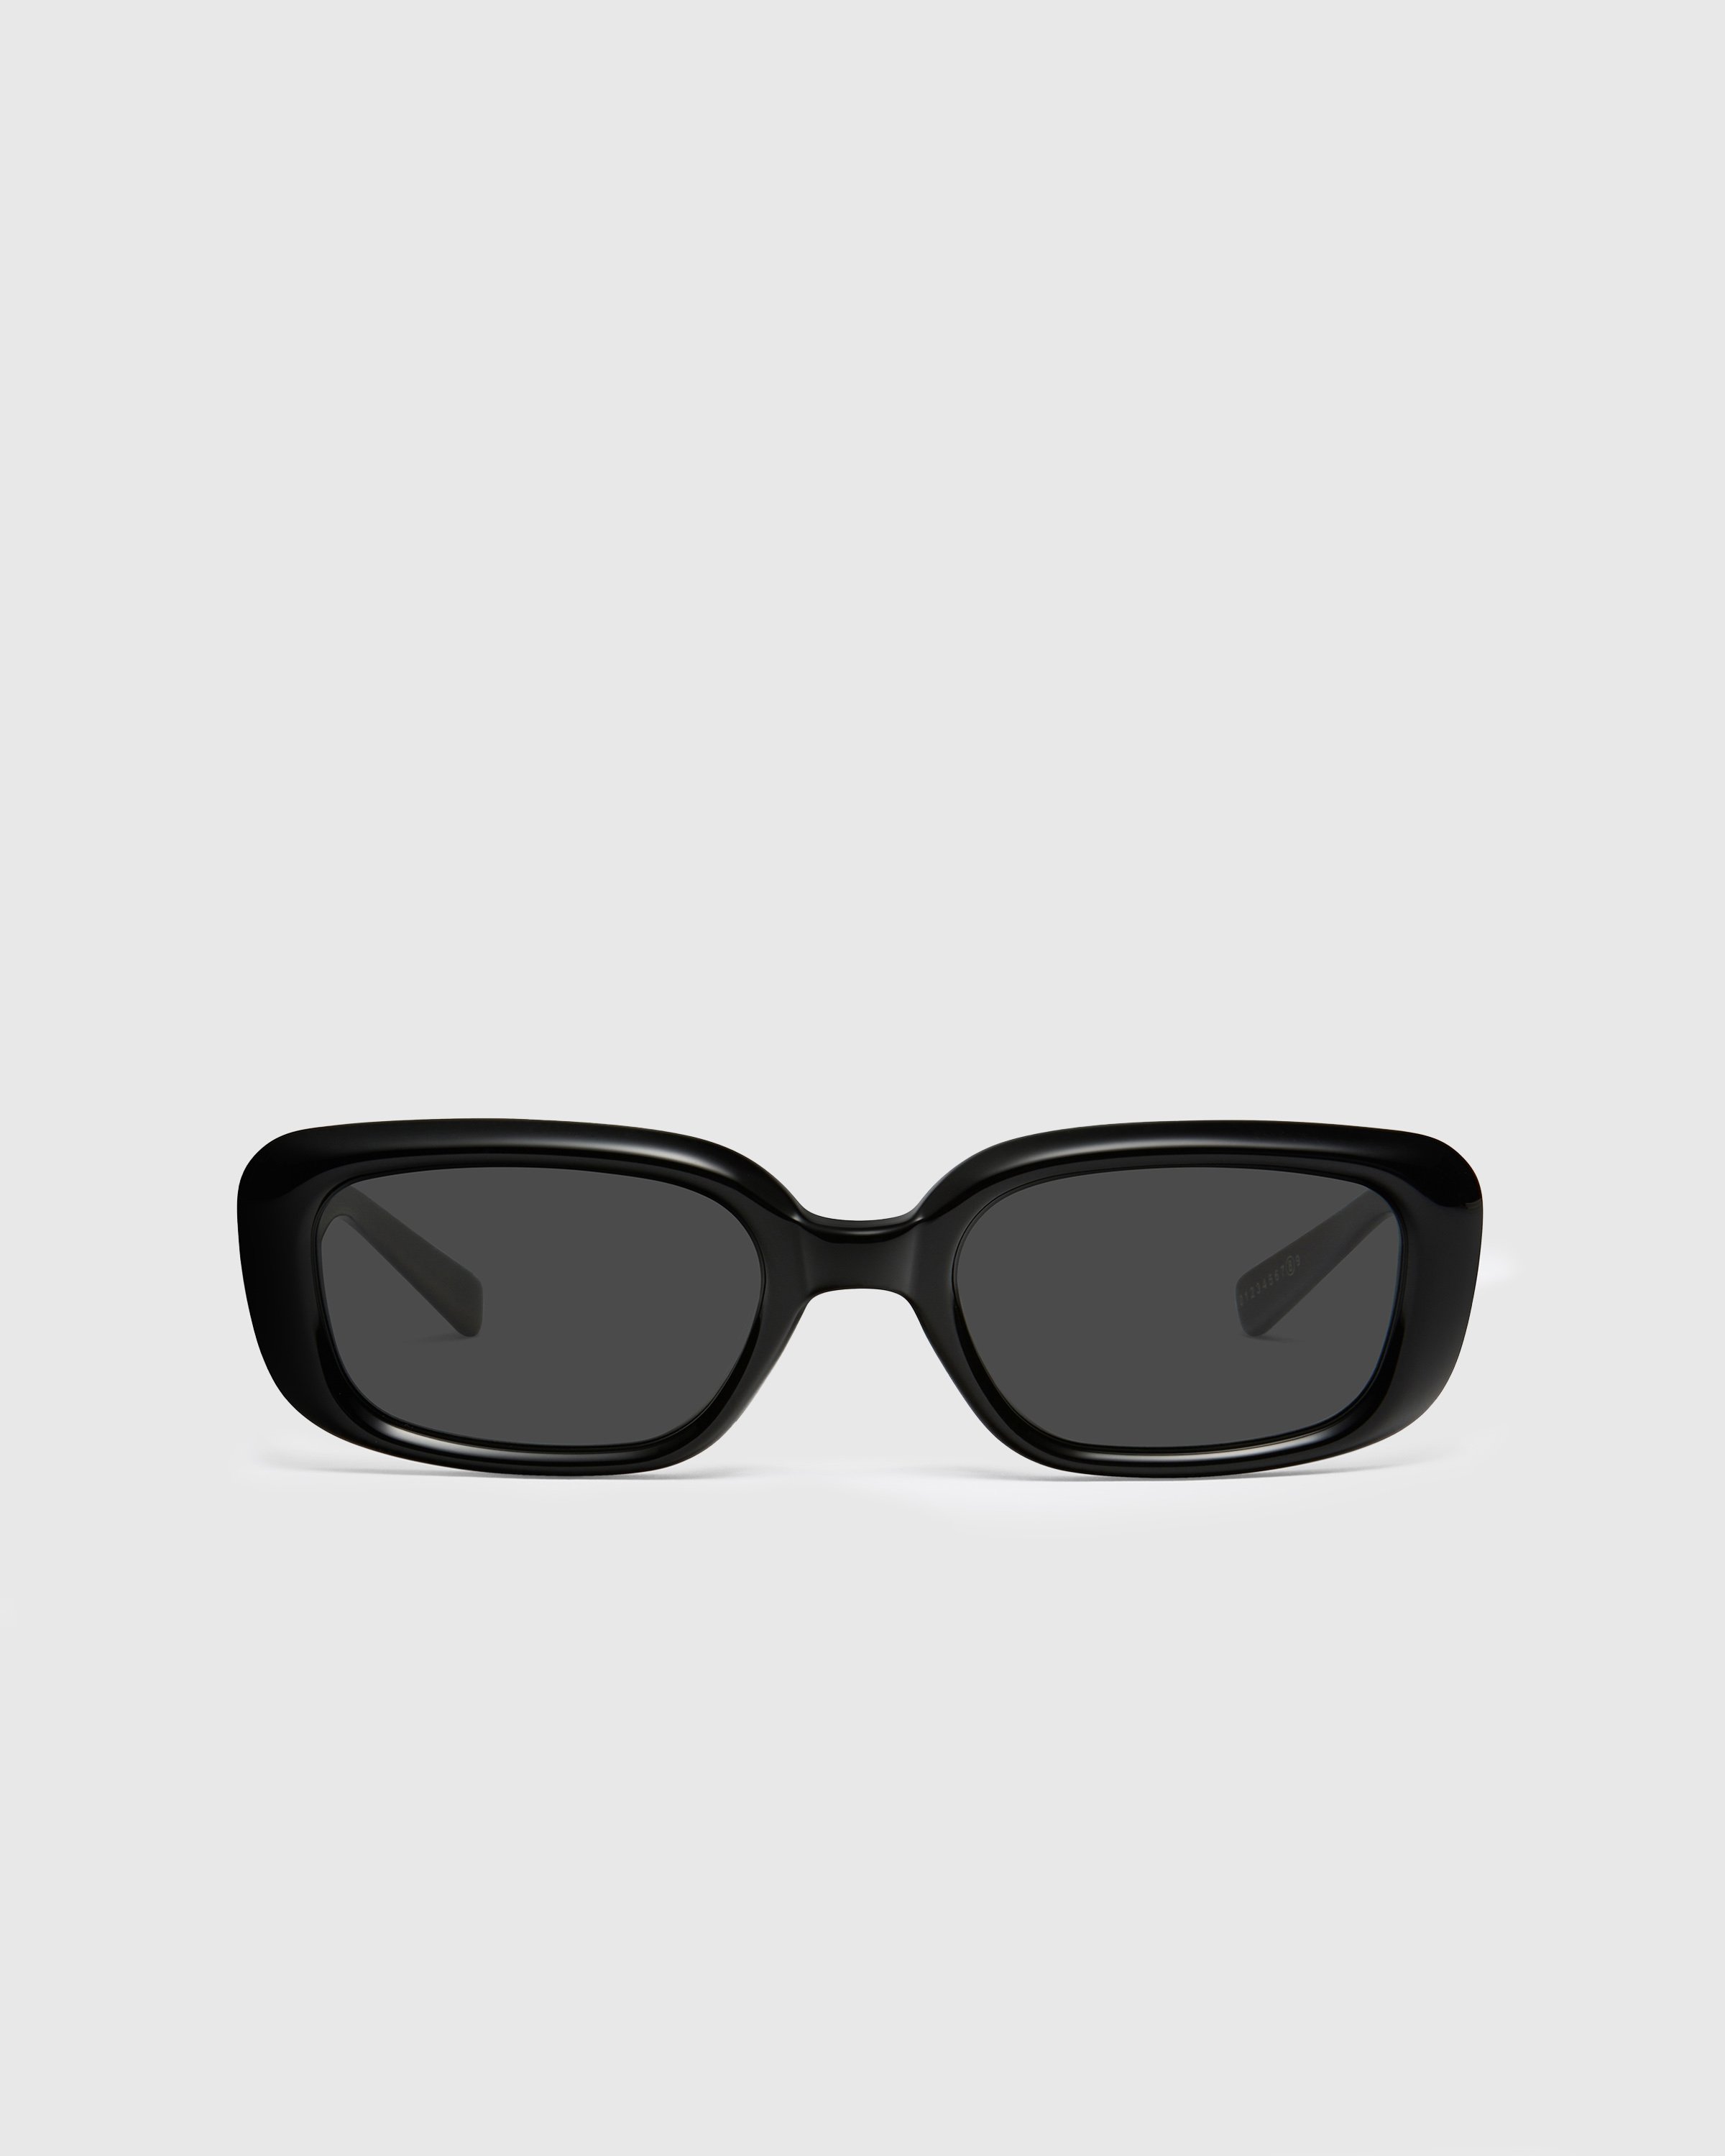 Maison Margiela x Gentle Monster - Sunglasses MM106-01 - Accessories - Black - Image 1